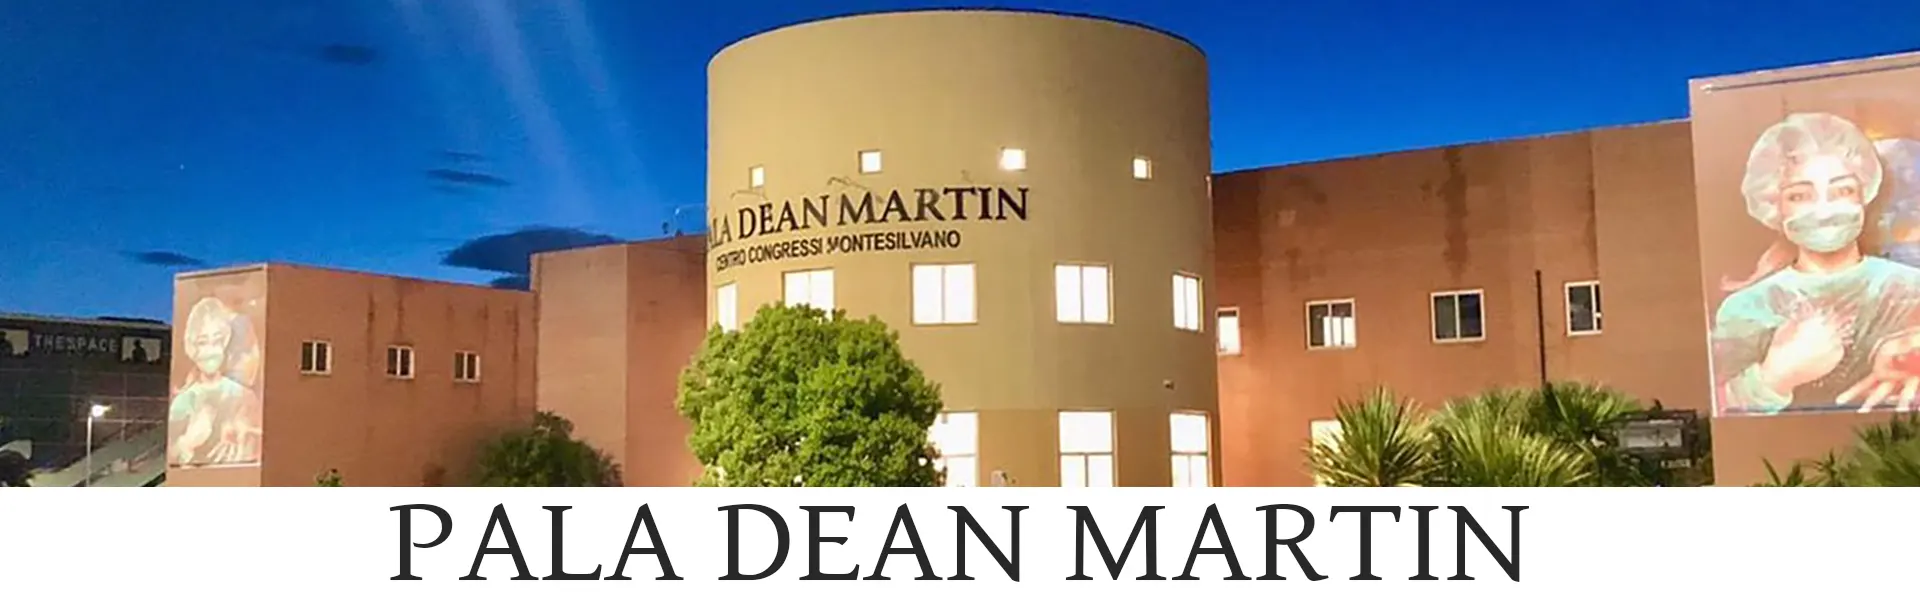 Pala Dean Martin (centro congressi)